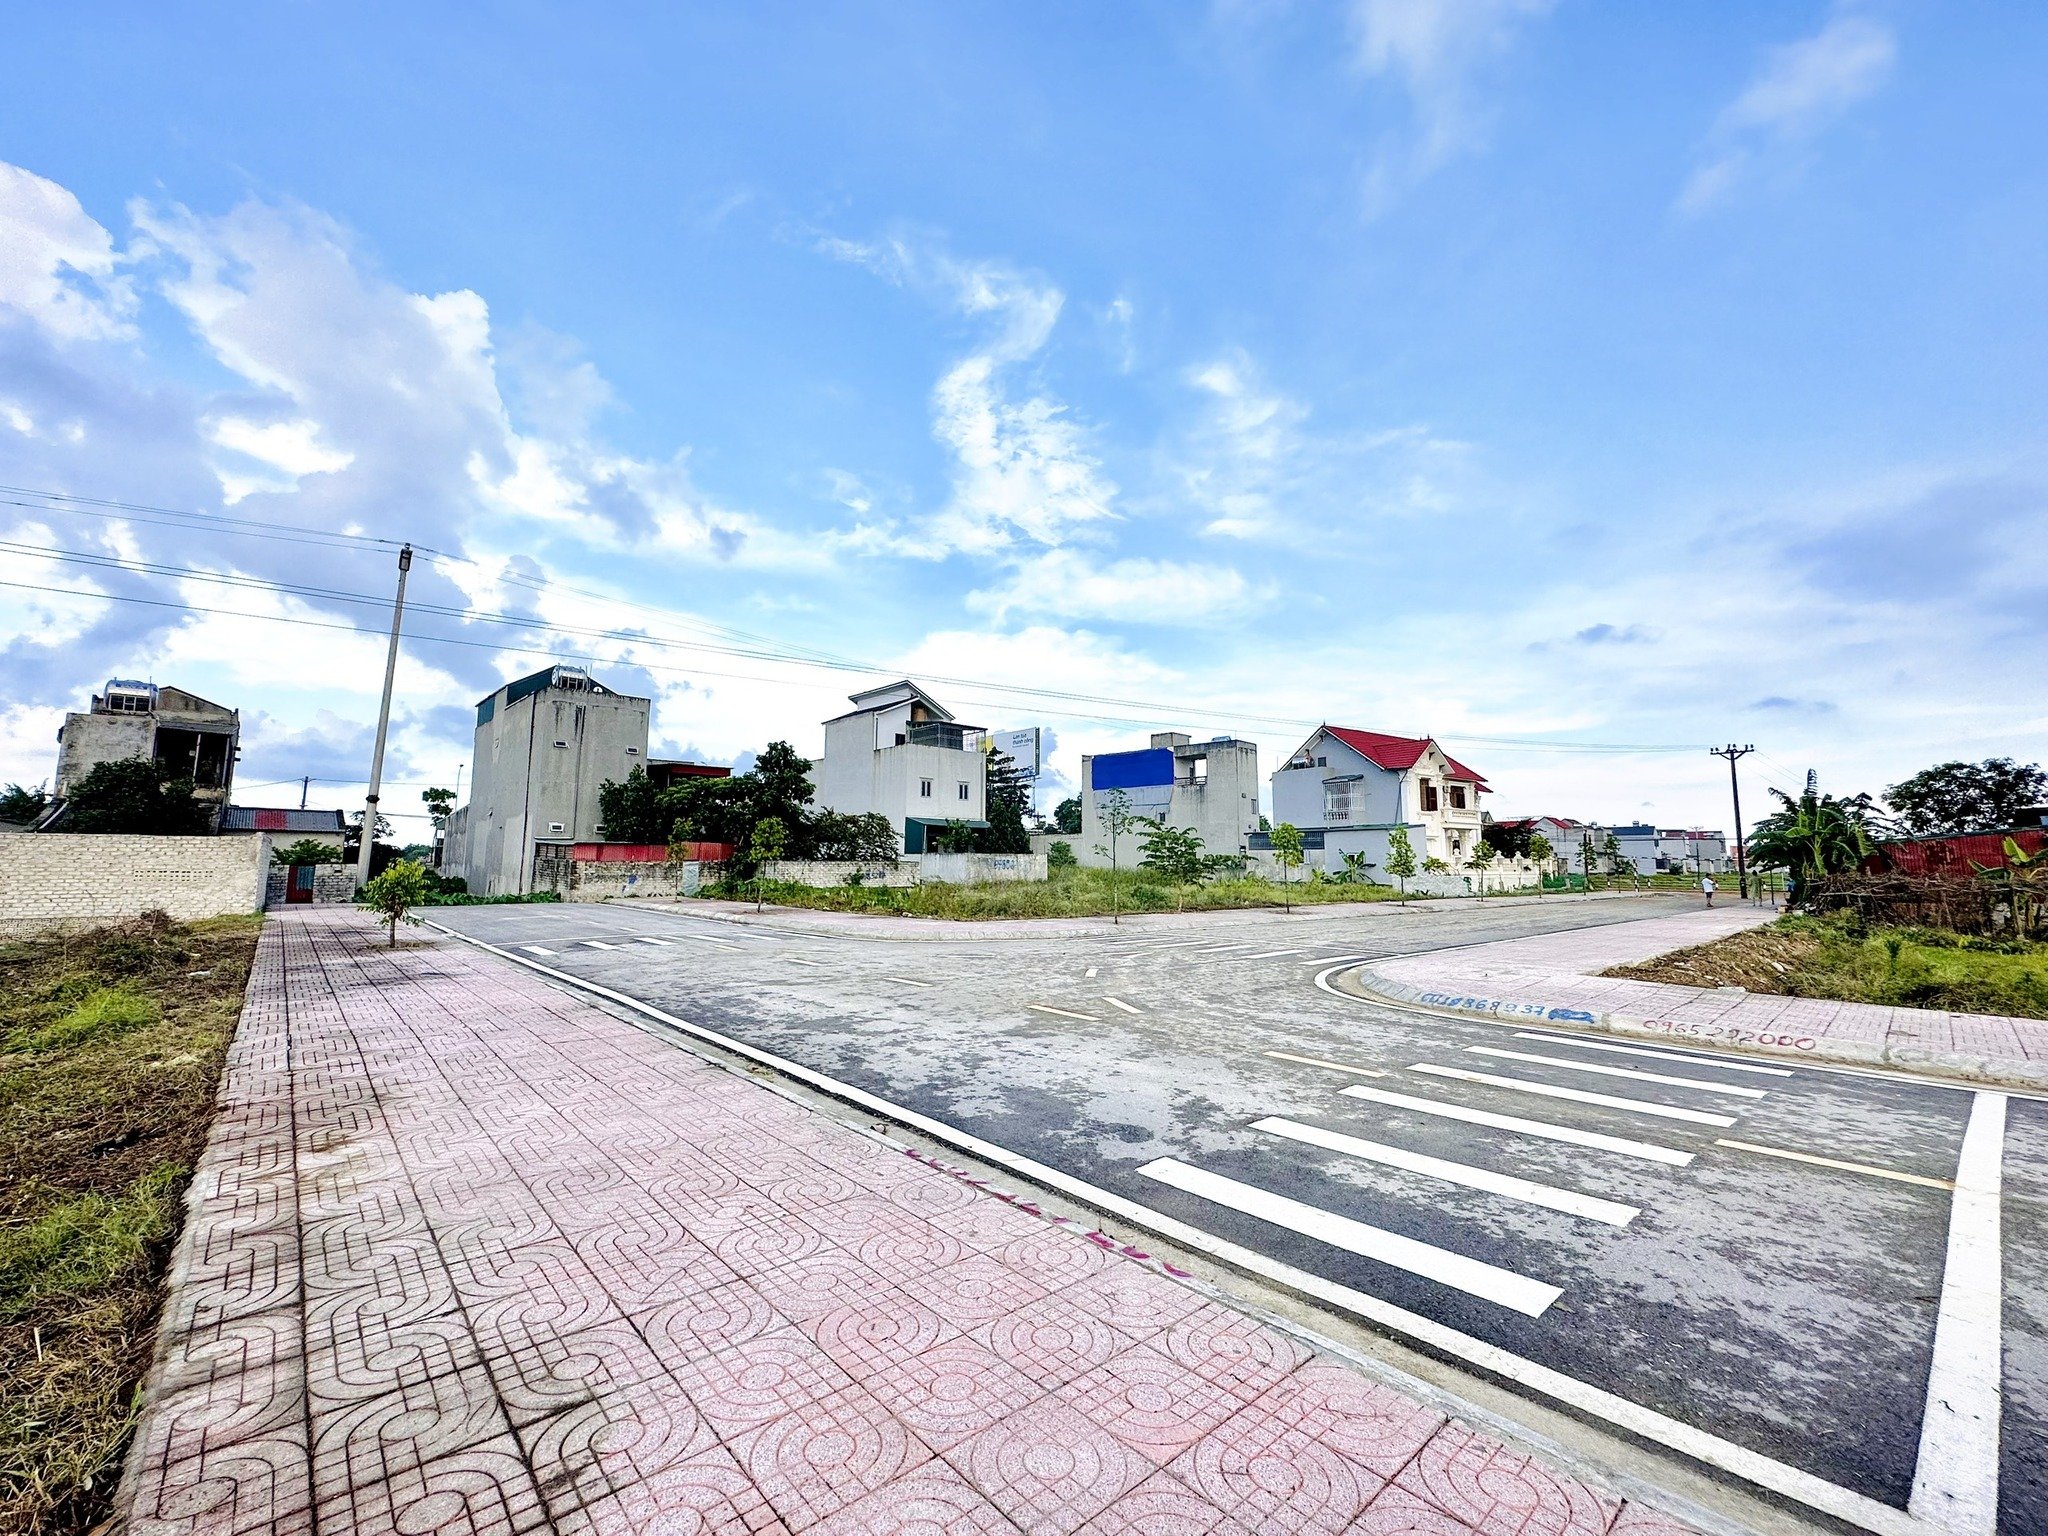 giá không thể hợp lý hơn cho 1 lô đất 2 mặt tiền thị trấn Tân Phong nằm trong khu quy hoạch gần 50ha 2